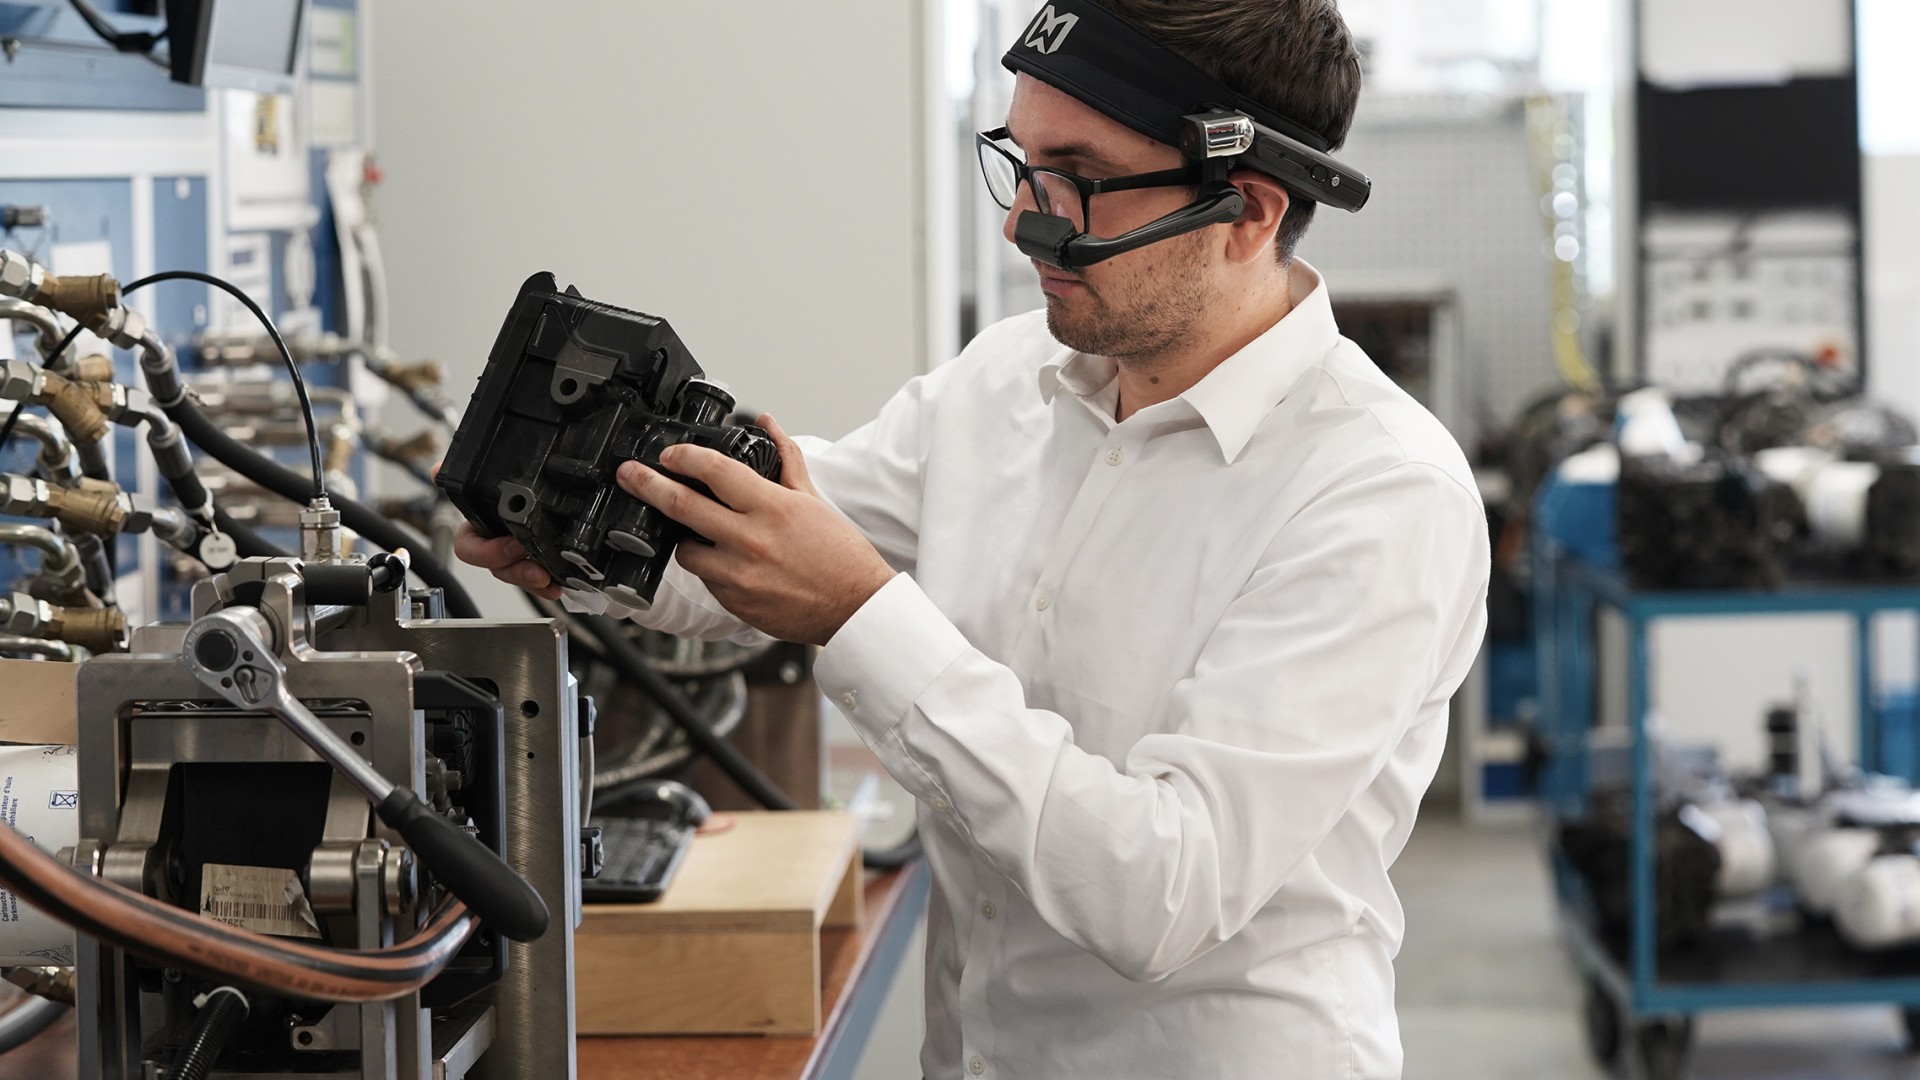 Ein Knorr-Bremse Mitarbeiter betrachtet durch die AR-Brille ein technisches Produkt.